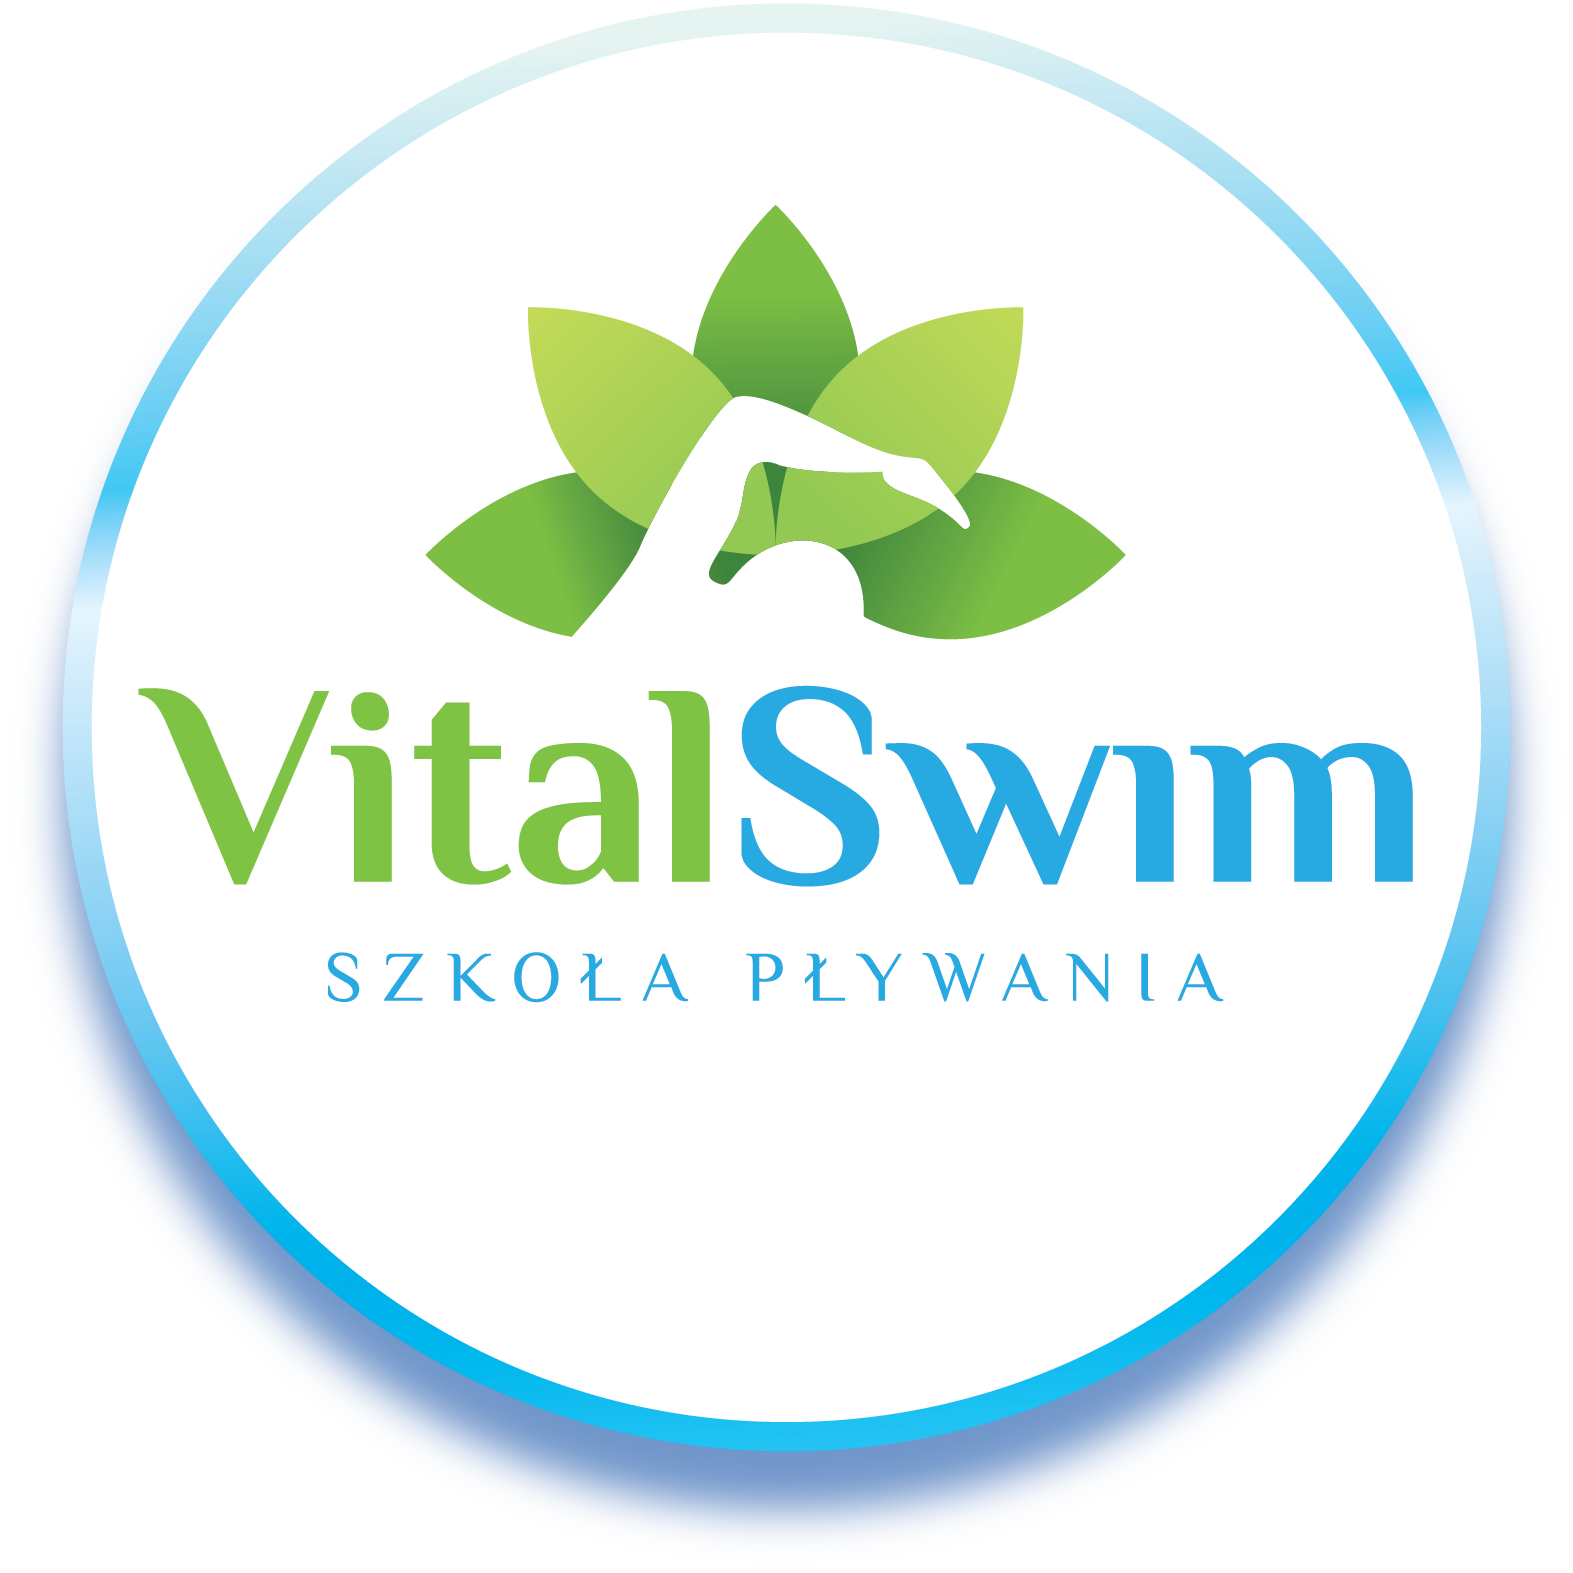 Vitalswim - Szkoła Pływania Gliwice | Nauka pływania Gliwice / Zabrze / Neptun Gliwice / Olimpijczyk Gliwice / nauka pływania dla dzieci / nauka pływania dla dorosłych